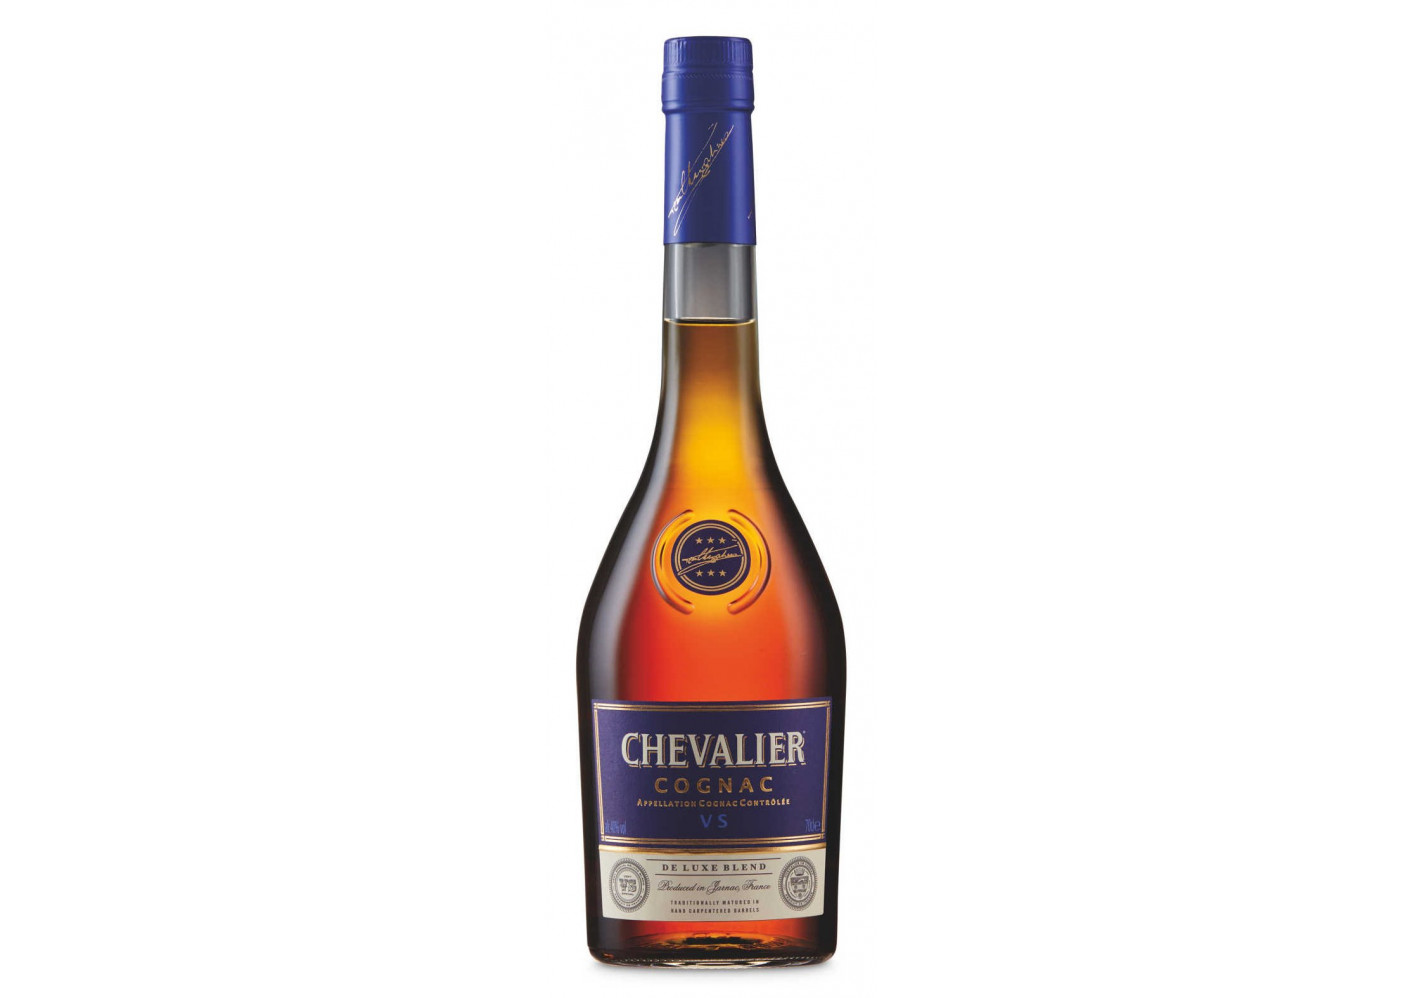 Chevalier Vs Cognac 70cl Prices Cognac Expert Com